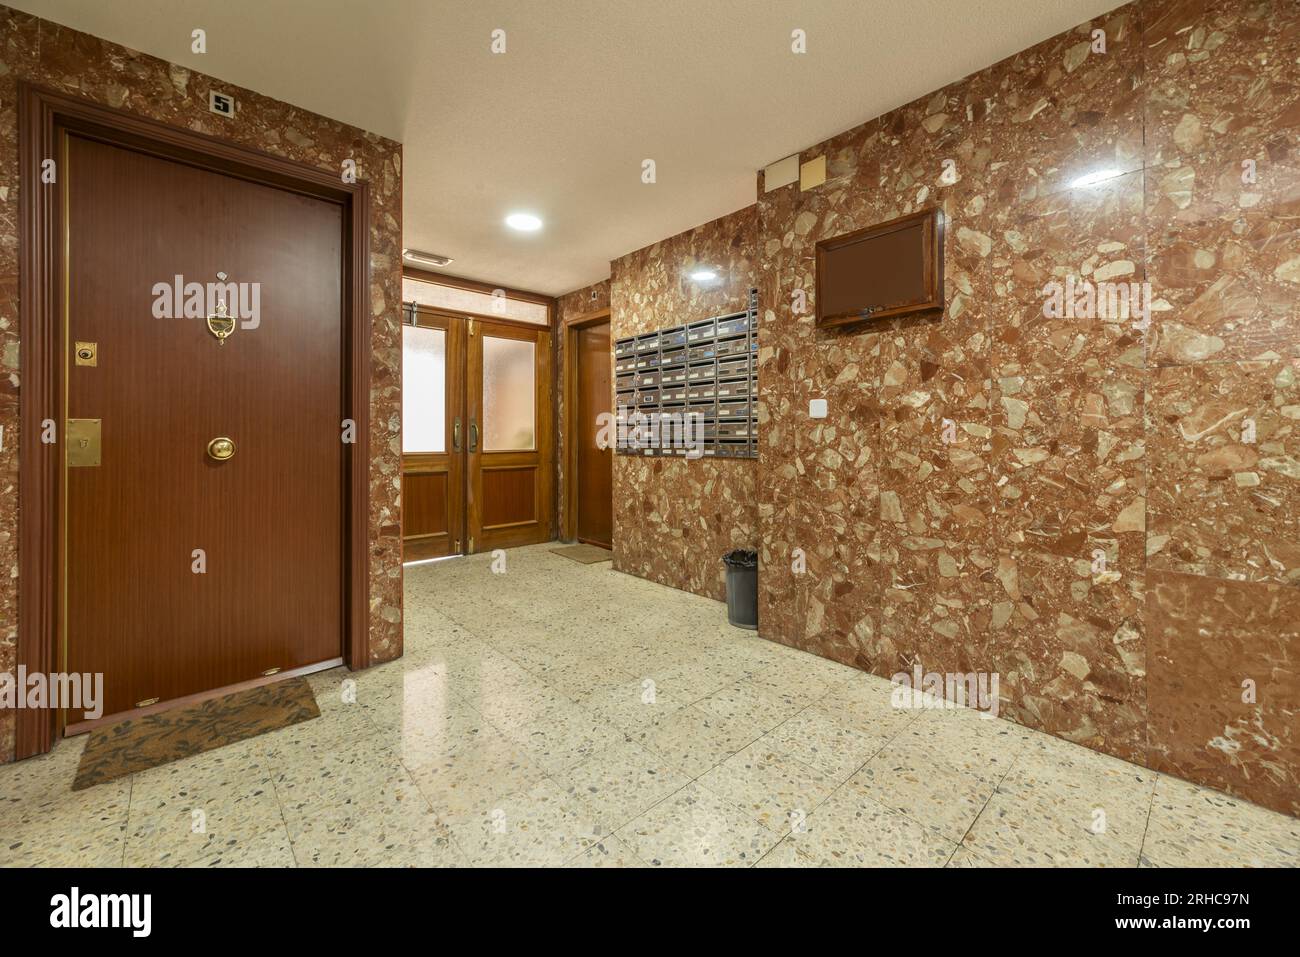 Portale di un edificio con accesso ad una casa al piano terra, porte in legno con pareti in marmo marrone e pavimenti in terrazzo chiaro Foto Stock